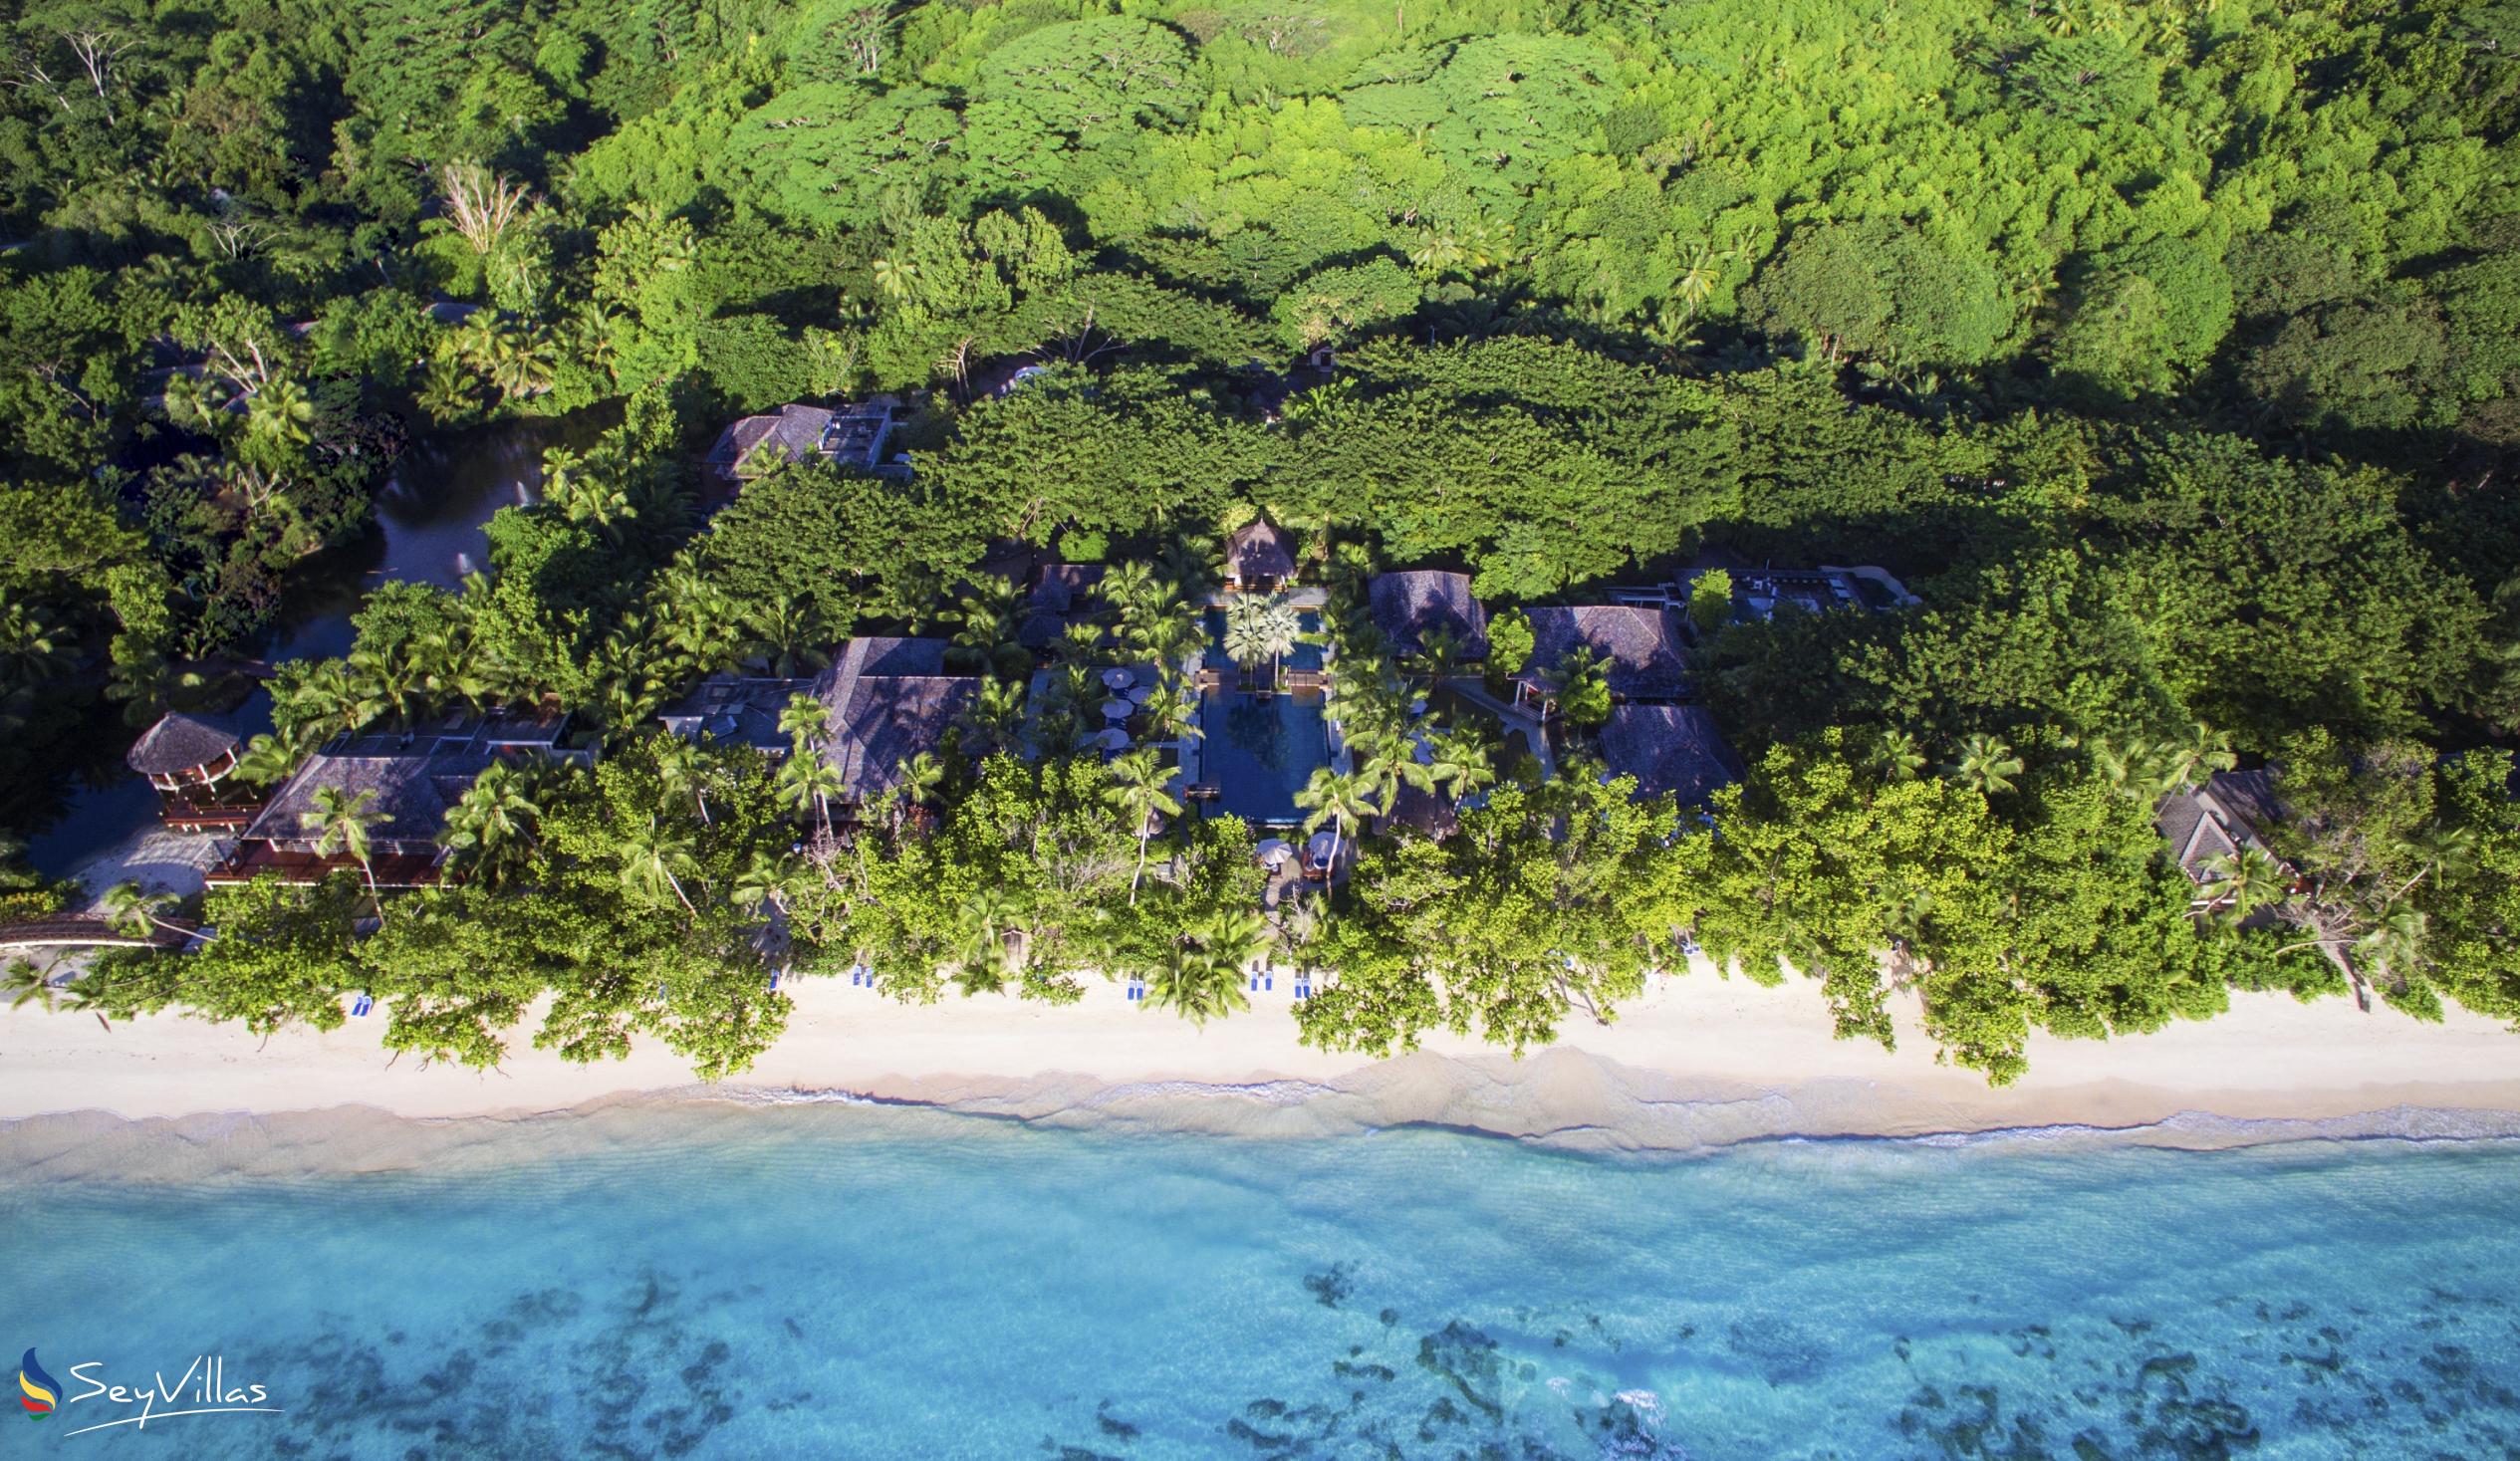 Foto 2: Hilton Seychelles Labriz Resort & Spa - Aussenbereich - Silhouette Island (Seychellen)